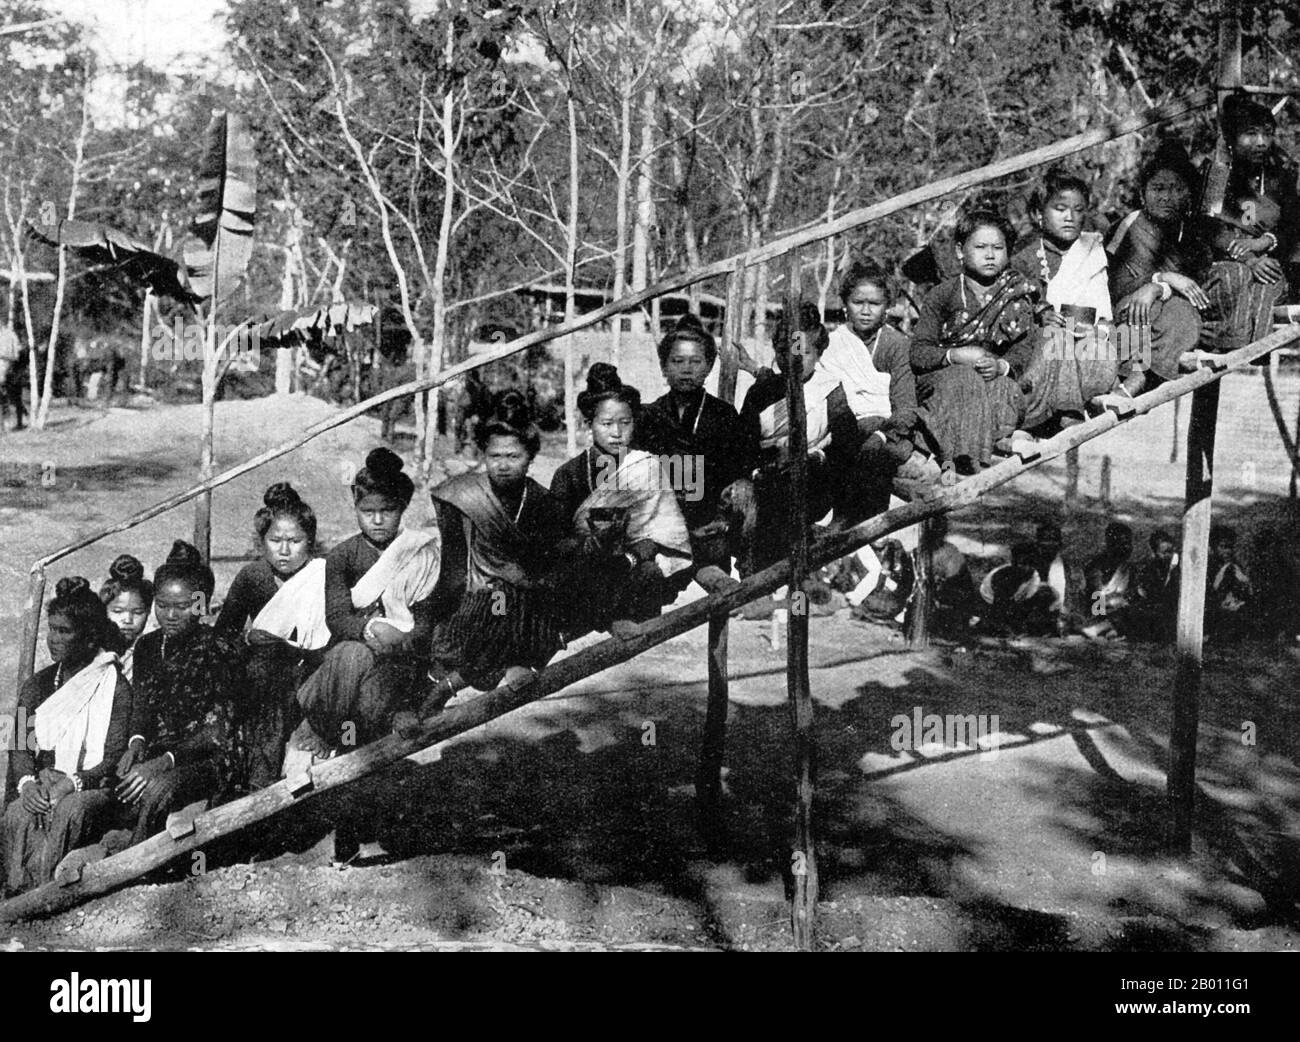 Thaïlande: De jeunes femmes du nord de la Thaïlande posent pour une photographie sur un escalier en bois, c. 1900. Connue du Siamois central comme les États lao au tournant du XXe siècle, la région nord de ce qui est maintenant la Thaïlande était une région indépendante connue sous le nom de royaume de Lanna. La ville principale, Chiang Mai, a été construite en 1296 par le roi Mengrai. La ville a été abandonnée en 1776—91 en raison des invasions birmanes, mais elle est devenue une partie reconnue de Siam à peu près au même moment. Le nord n'était relié à Bangkok que par la rivière, un trajet qui pourrait prendre environ six mois jusqu'à ce qu'en 1922 un chemin de fer soit achevé. Banque D'Images